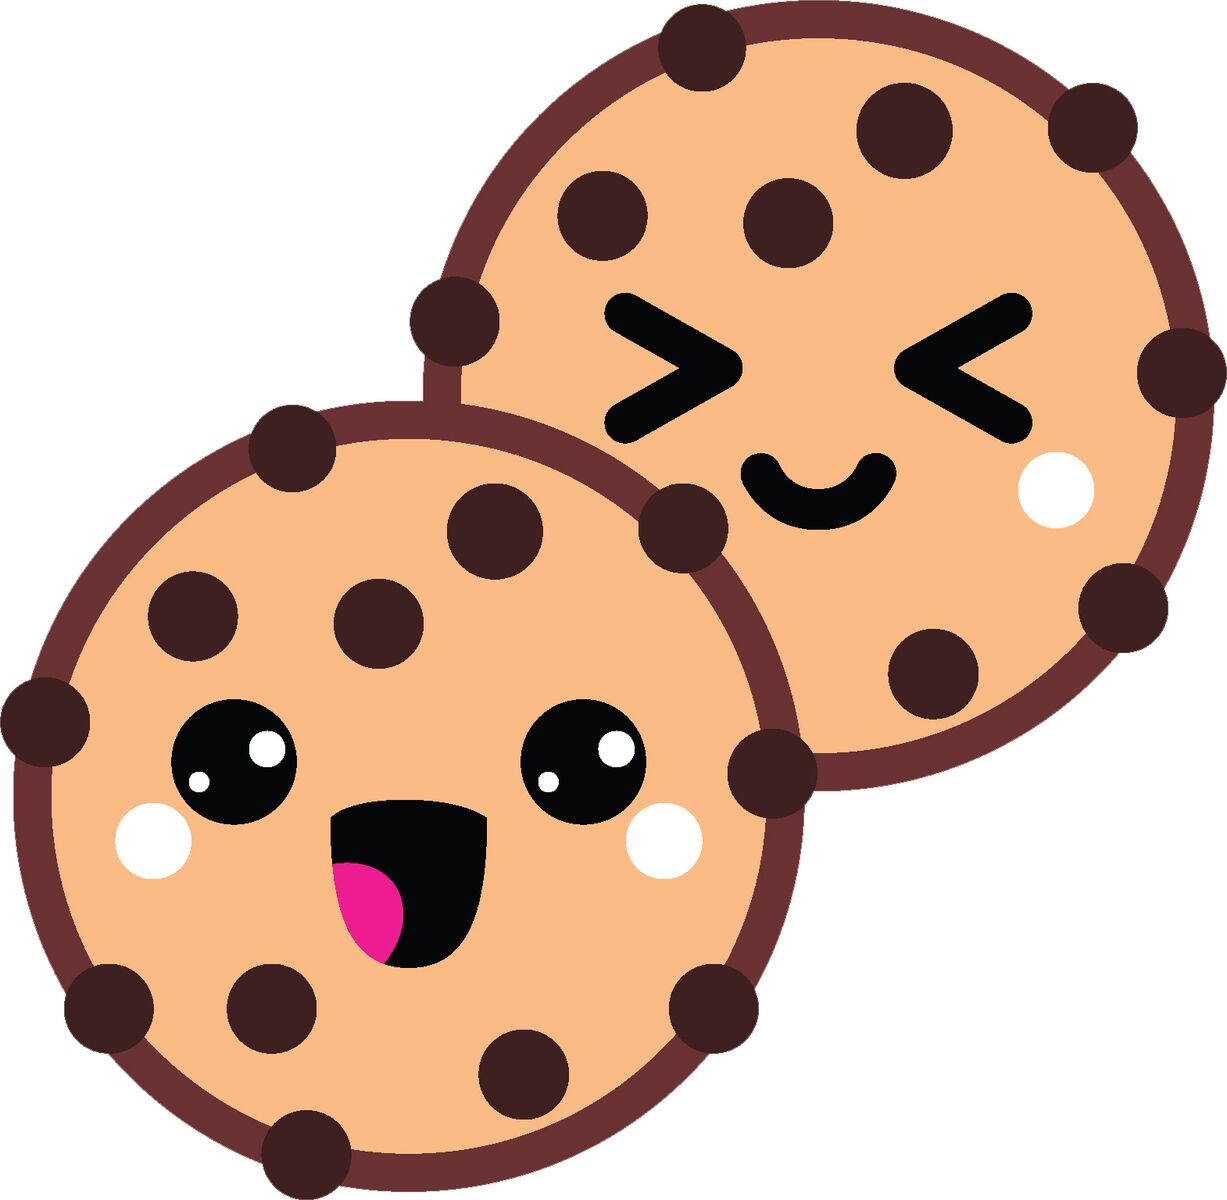 Delicious Yummy Dessert Treat Cartoon Emoji - Cookie #3 Vinyl Decal Sticker